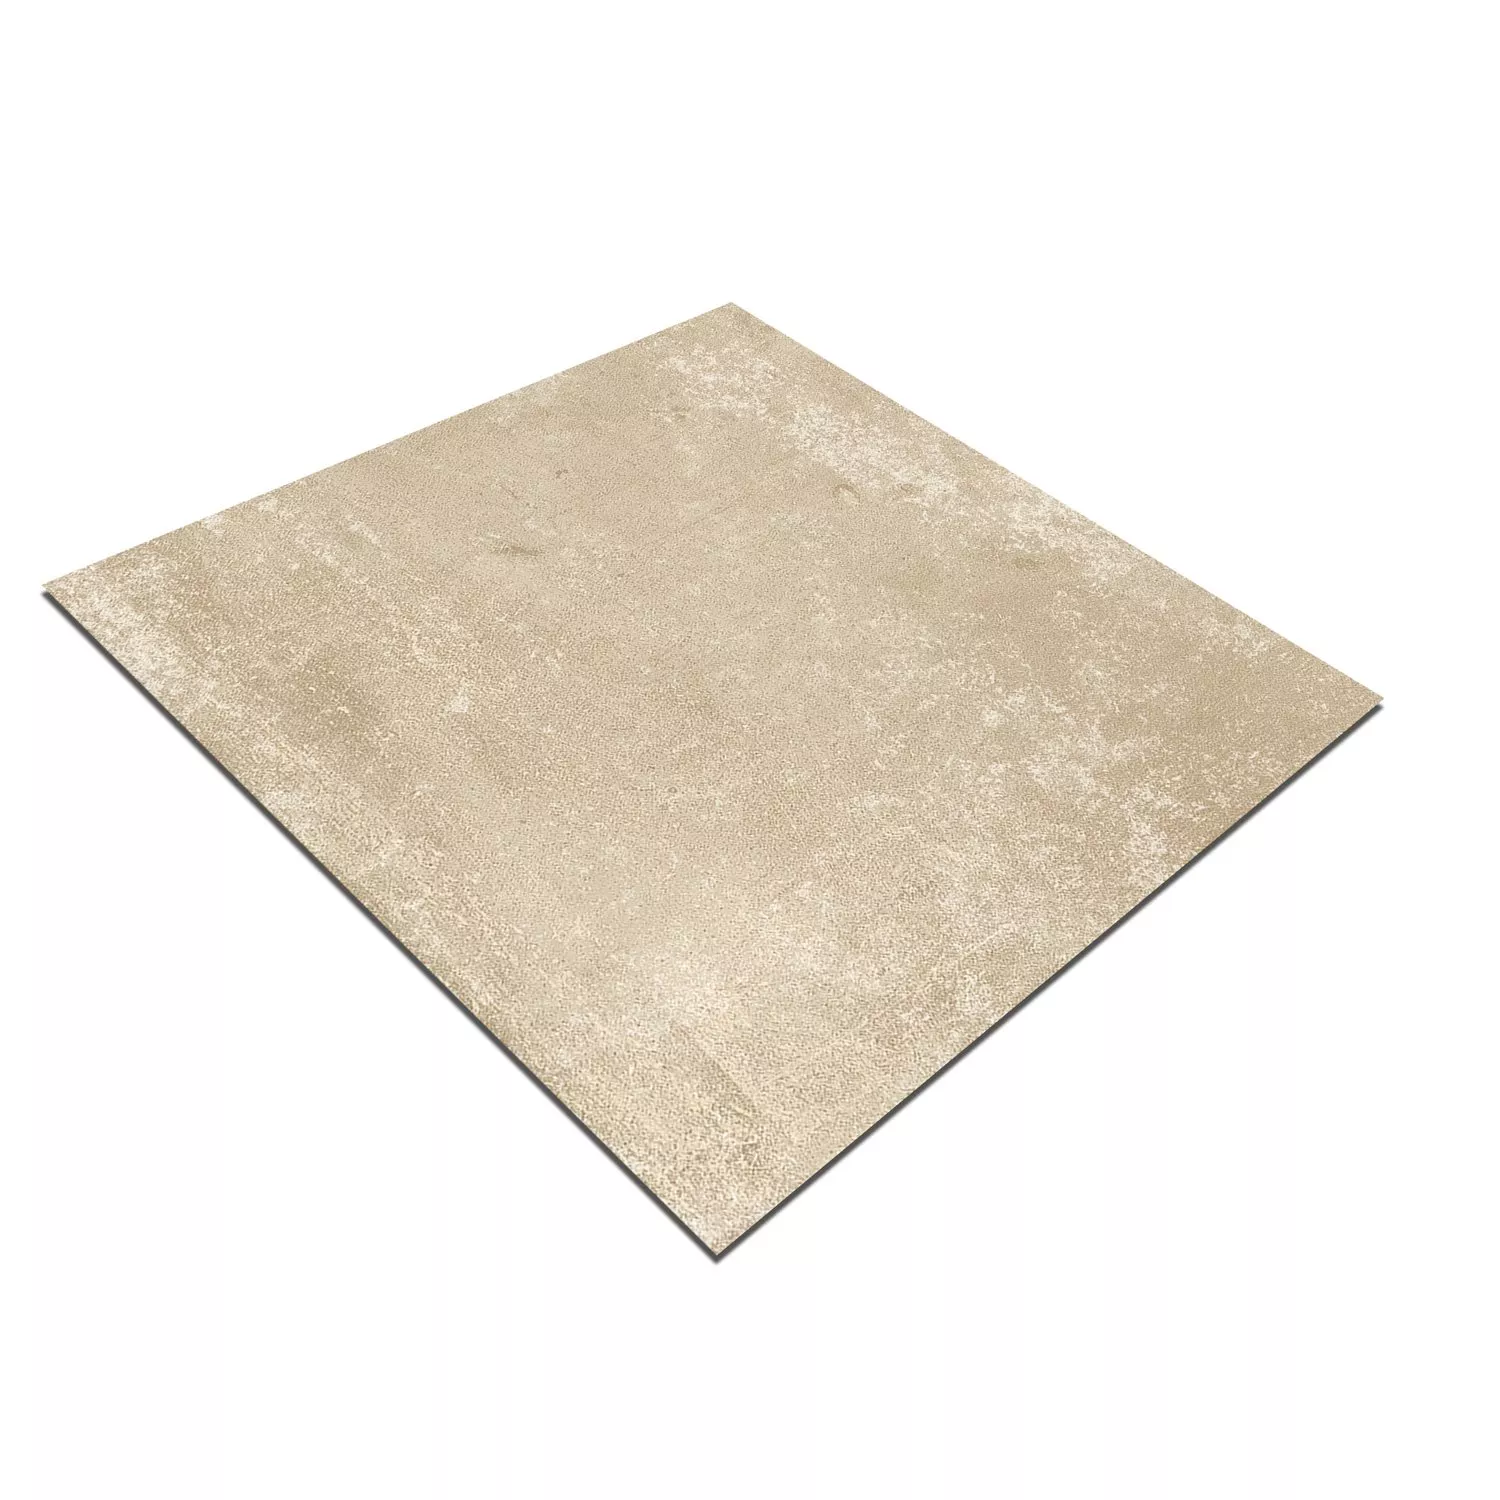 Cement Tiles Retro Optic Gris Basic Tile Beige 18,6x18,6cm